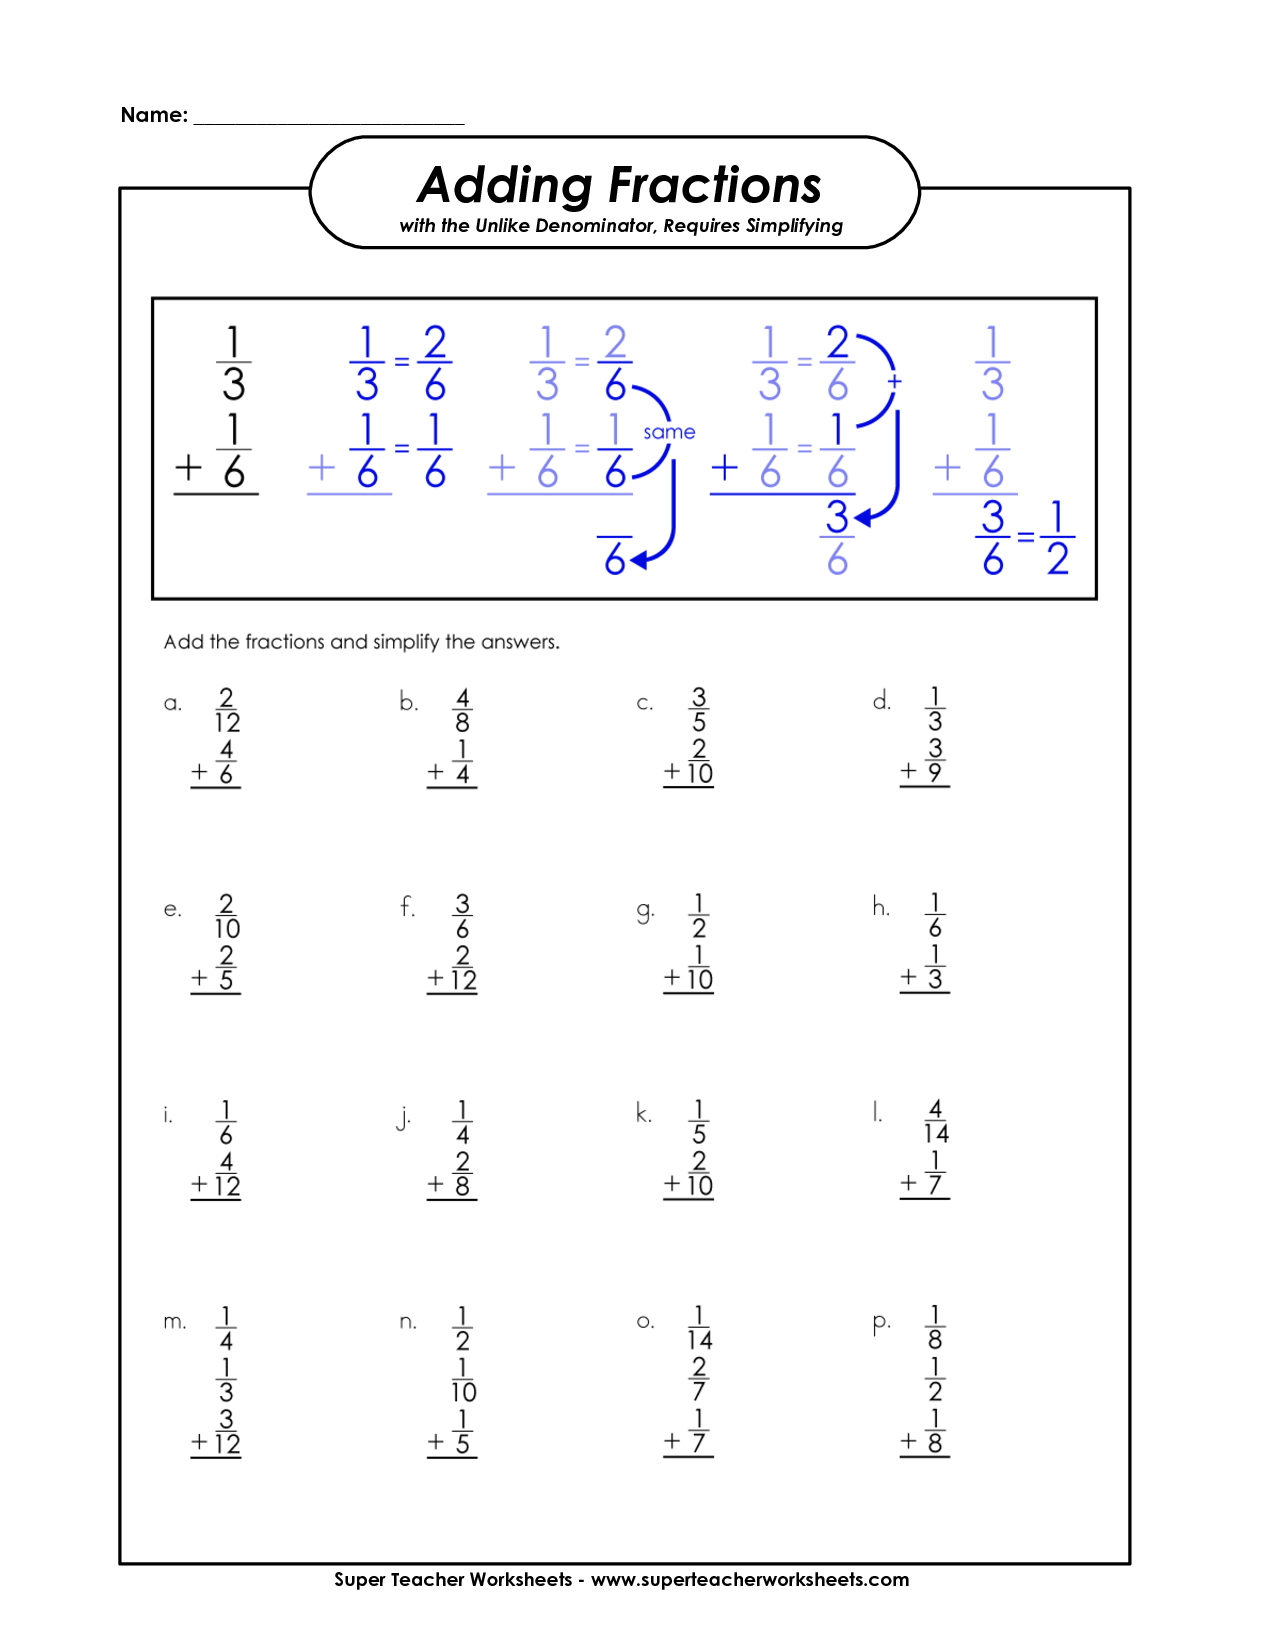 15-best-images-of-super-teacher-worksheets-patterns-3rd-grade-free-fraction-worksheets-adding